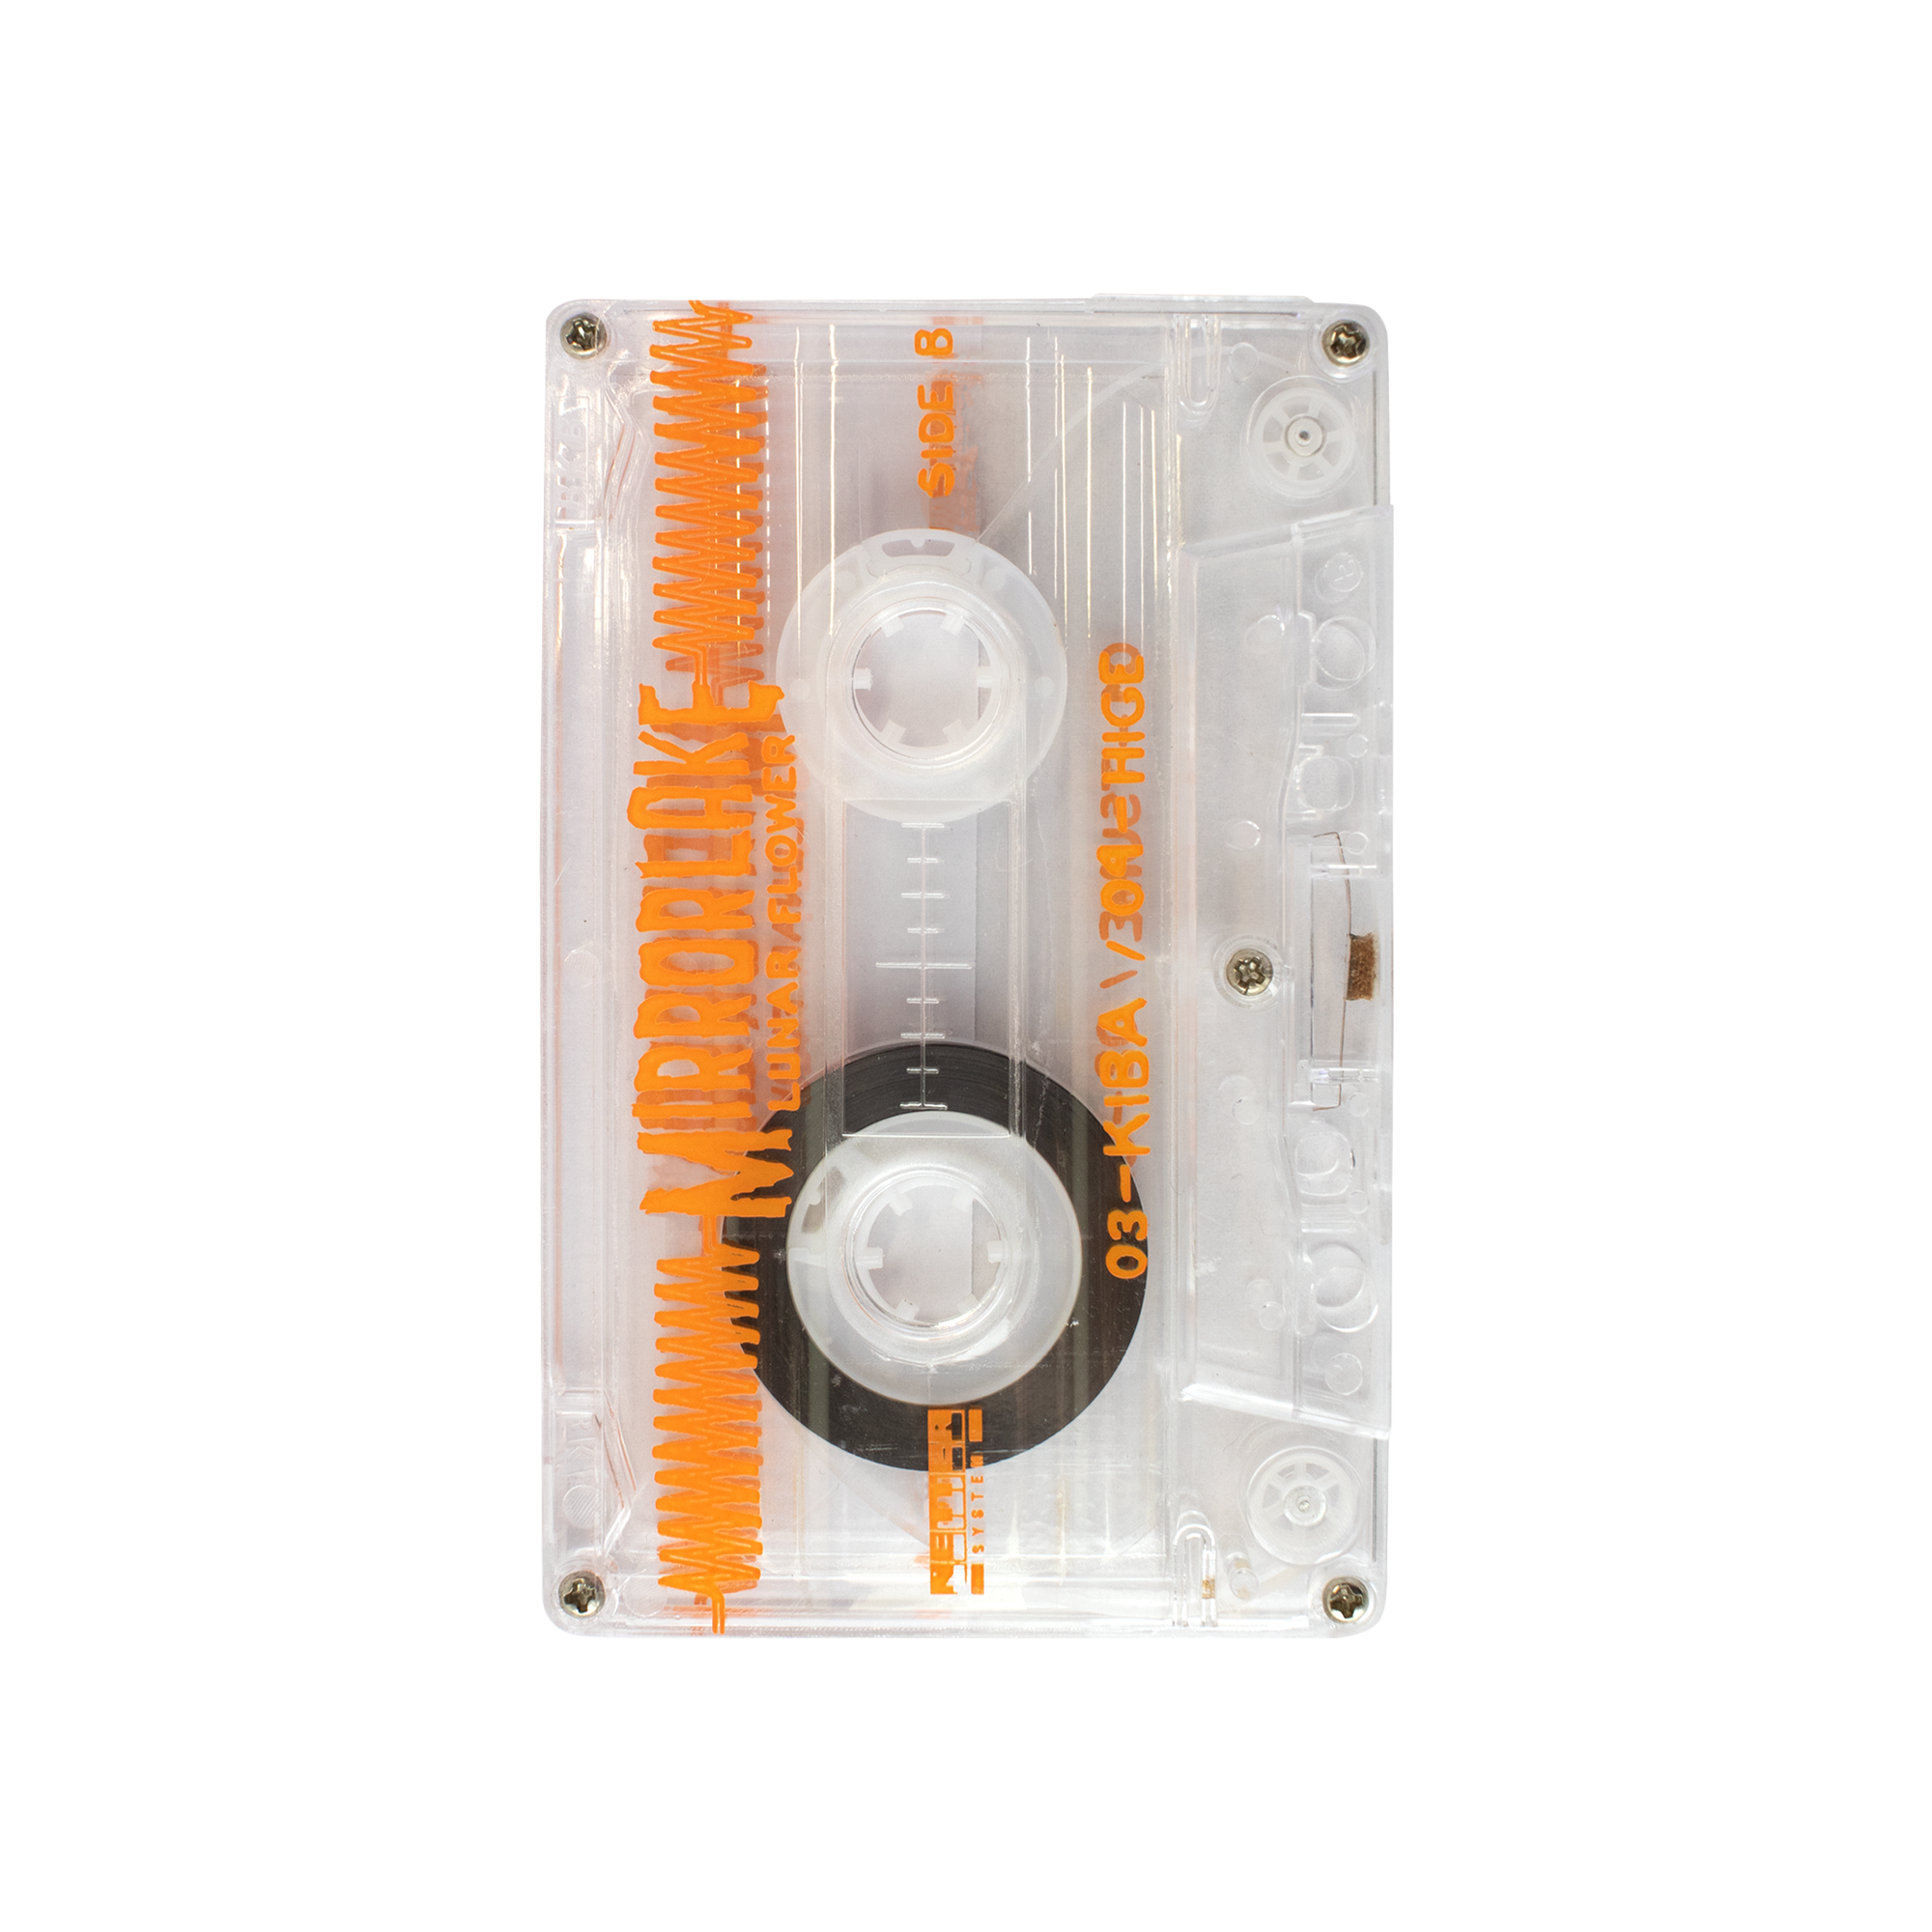 Netter System 002 - MirrorLake Cassette Tape